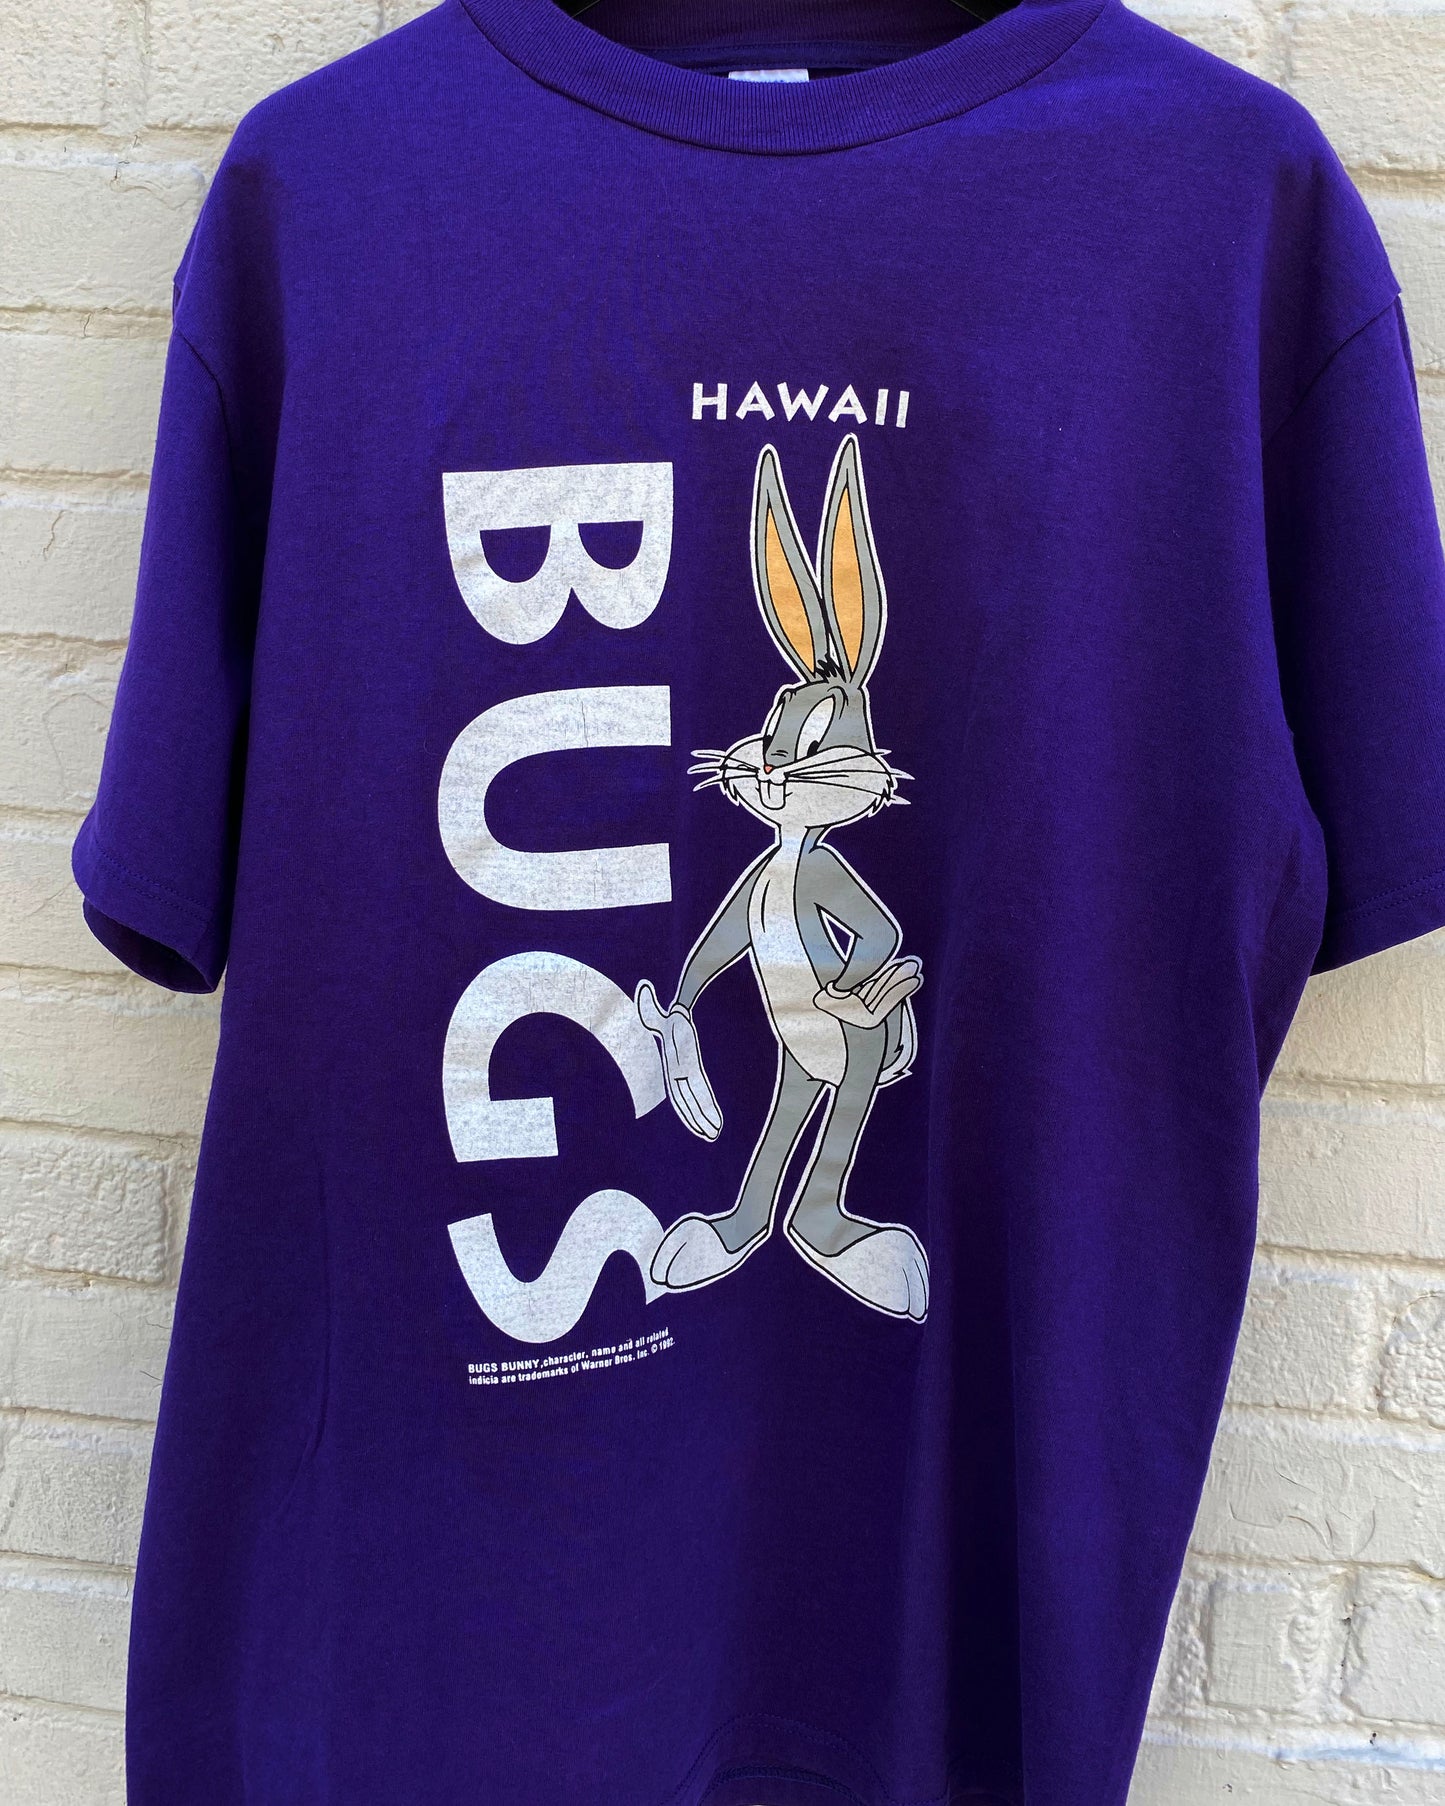 Hawaii Bugs Bunny T-Shirt